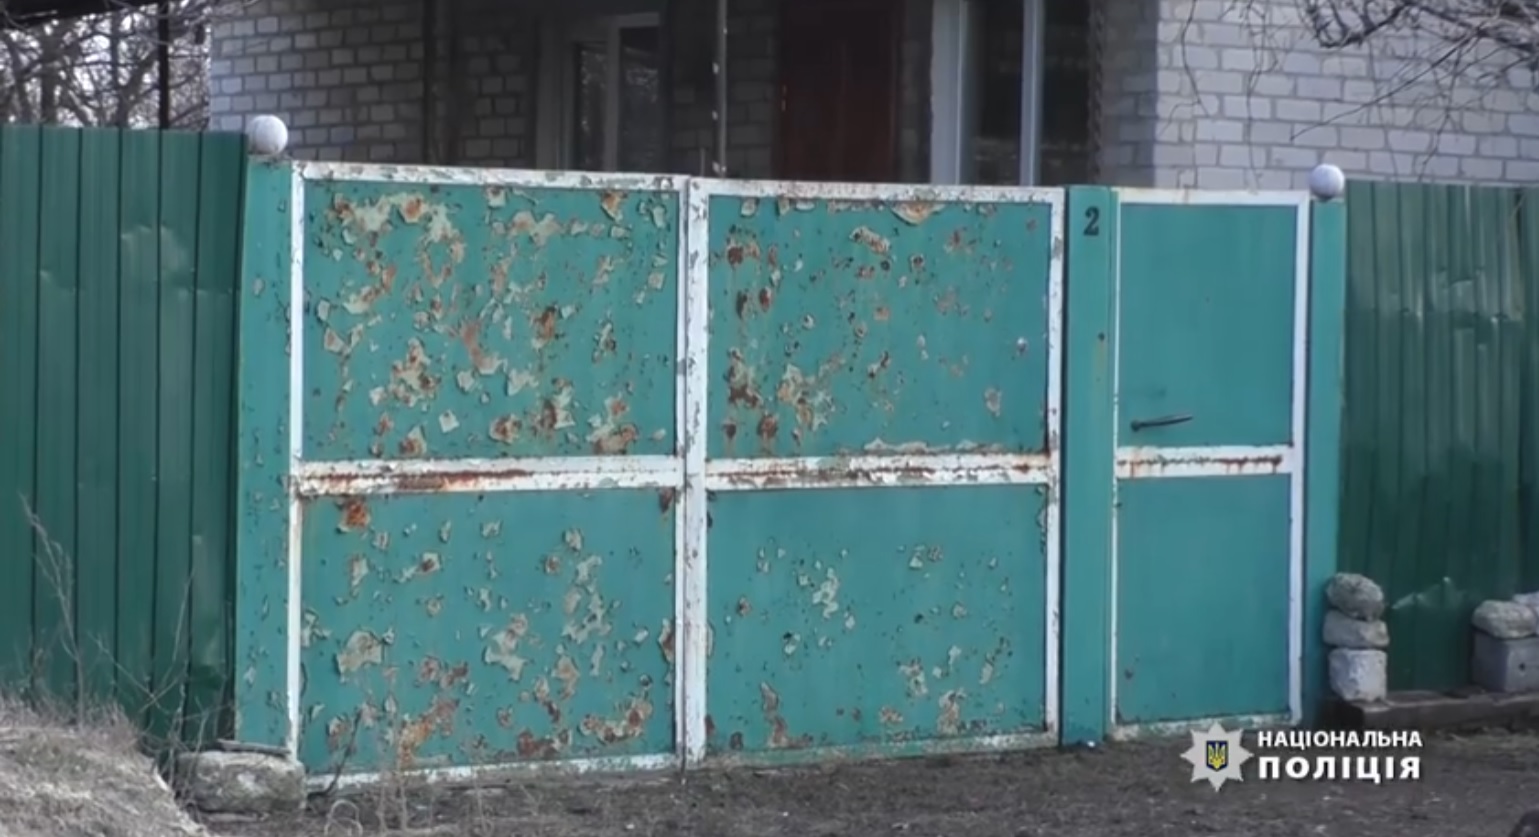 Оккупанты обстреляли детсад в Зеленополье и ранили женщину в Николаевке 5